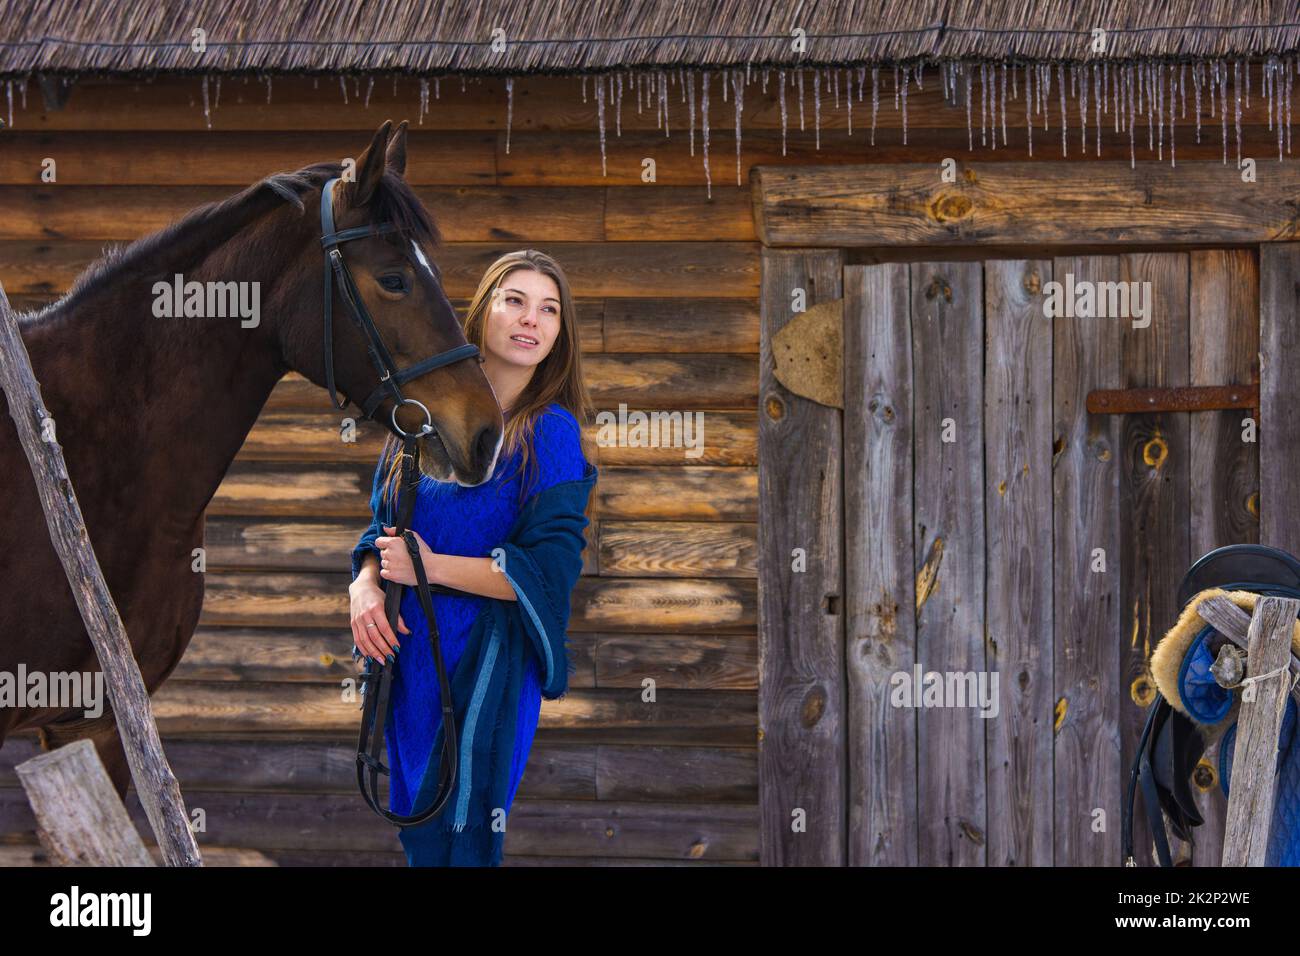 Una bella giovane ragazza tiene un cavallo vicino alla briglia, sullo sfondo di un muro di tronchi Foto Stock